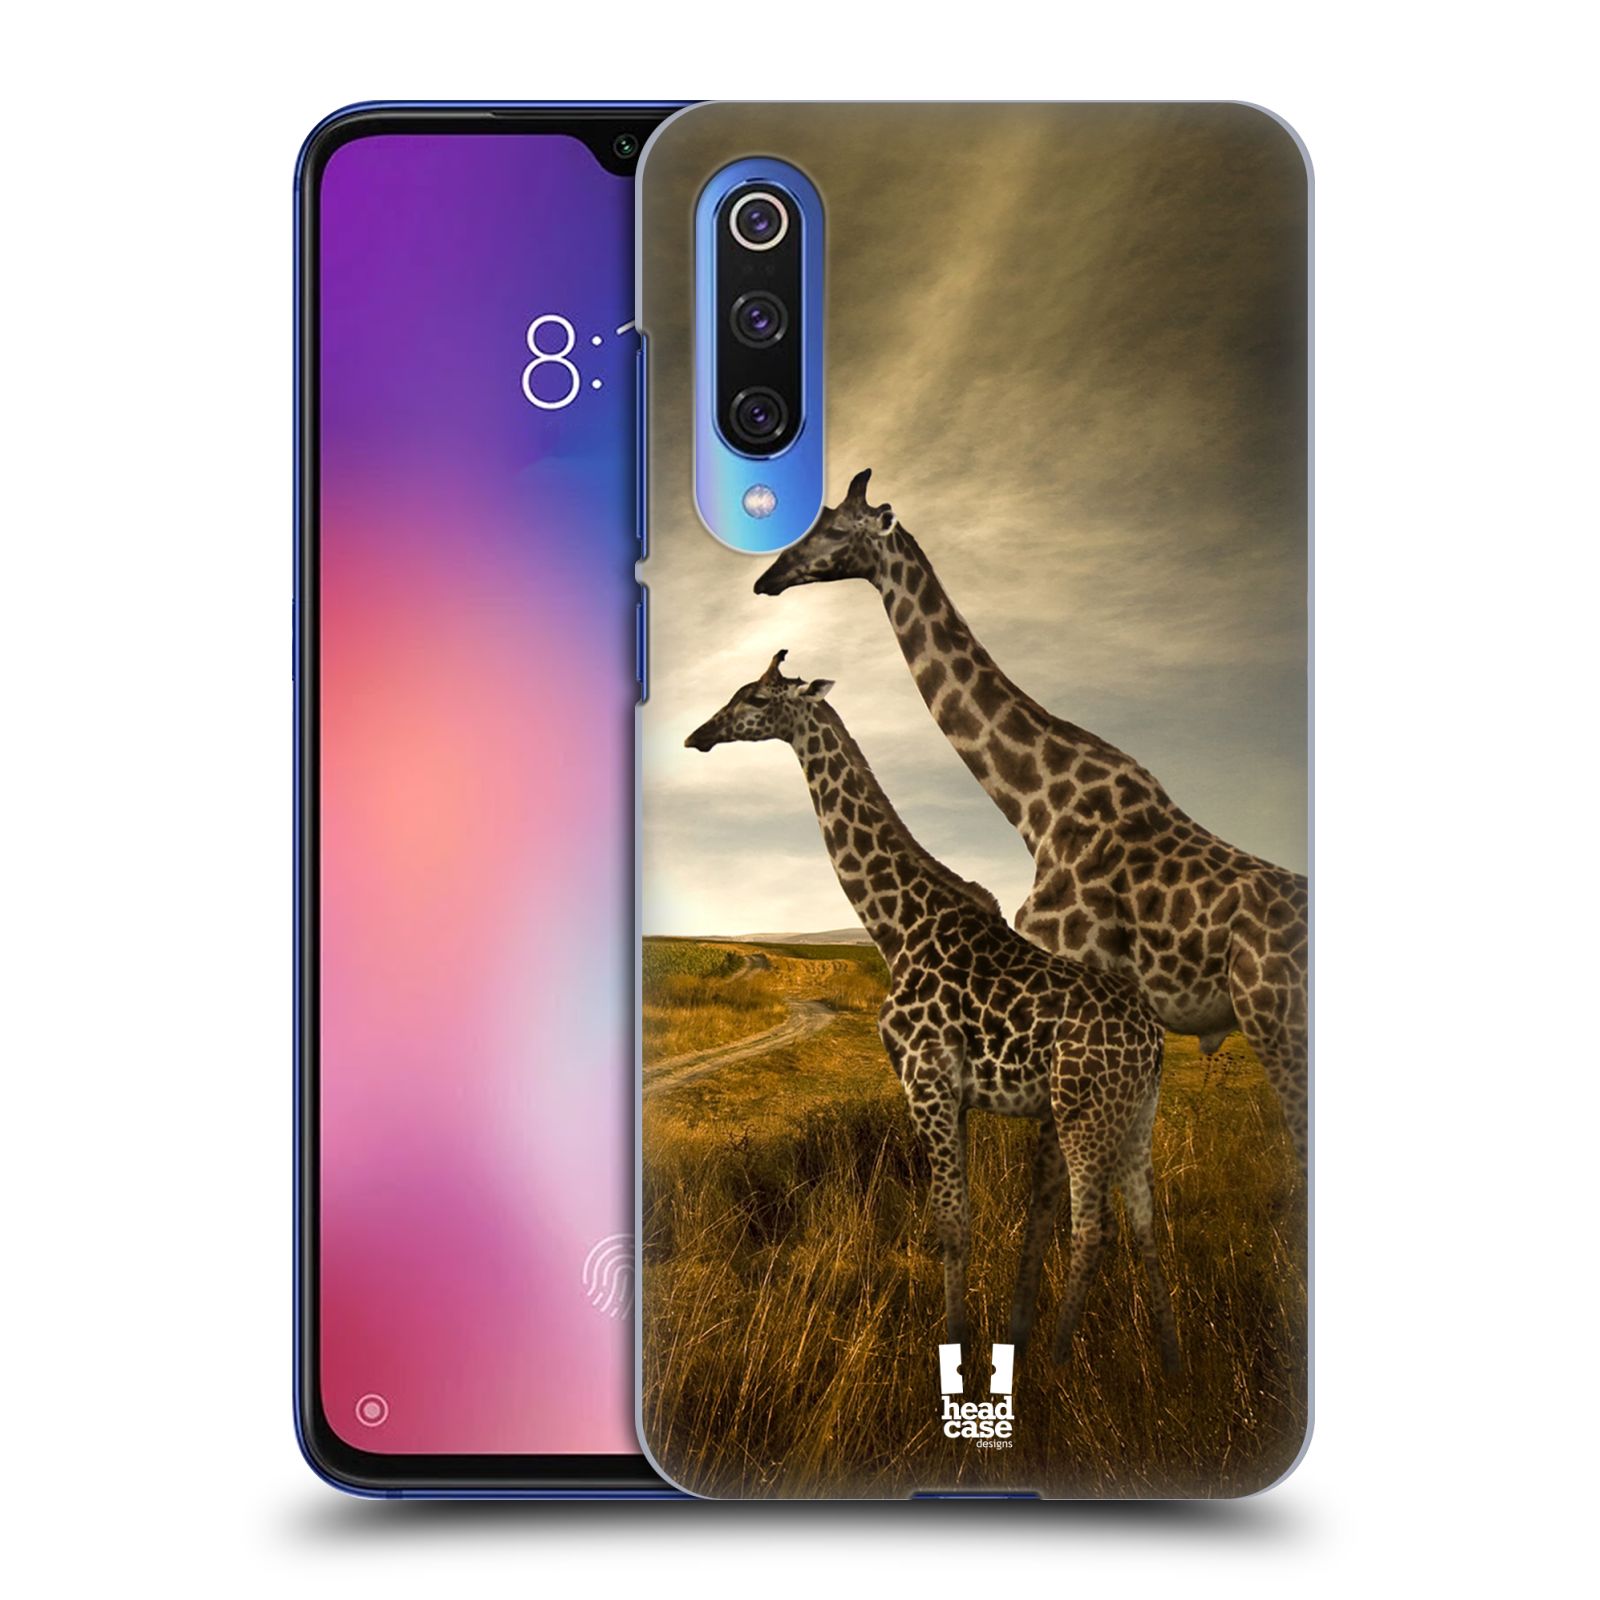 Zadní obal pro mobil Xiaomi Mi 9 SE - HEAD CASE - Svět zvířat žirafy